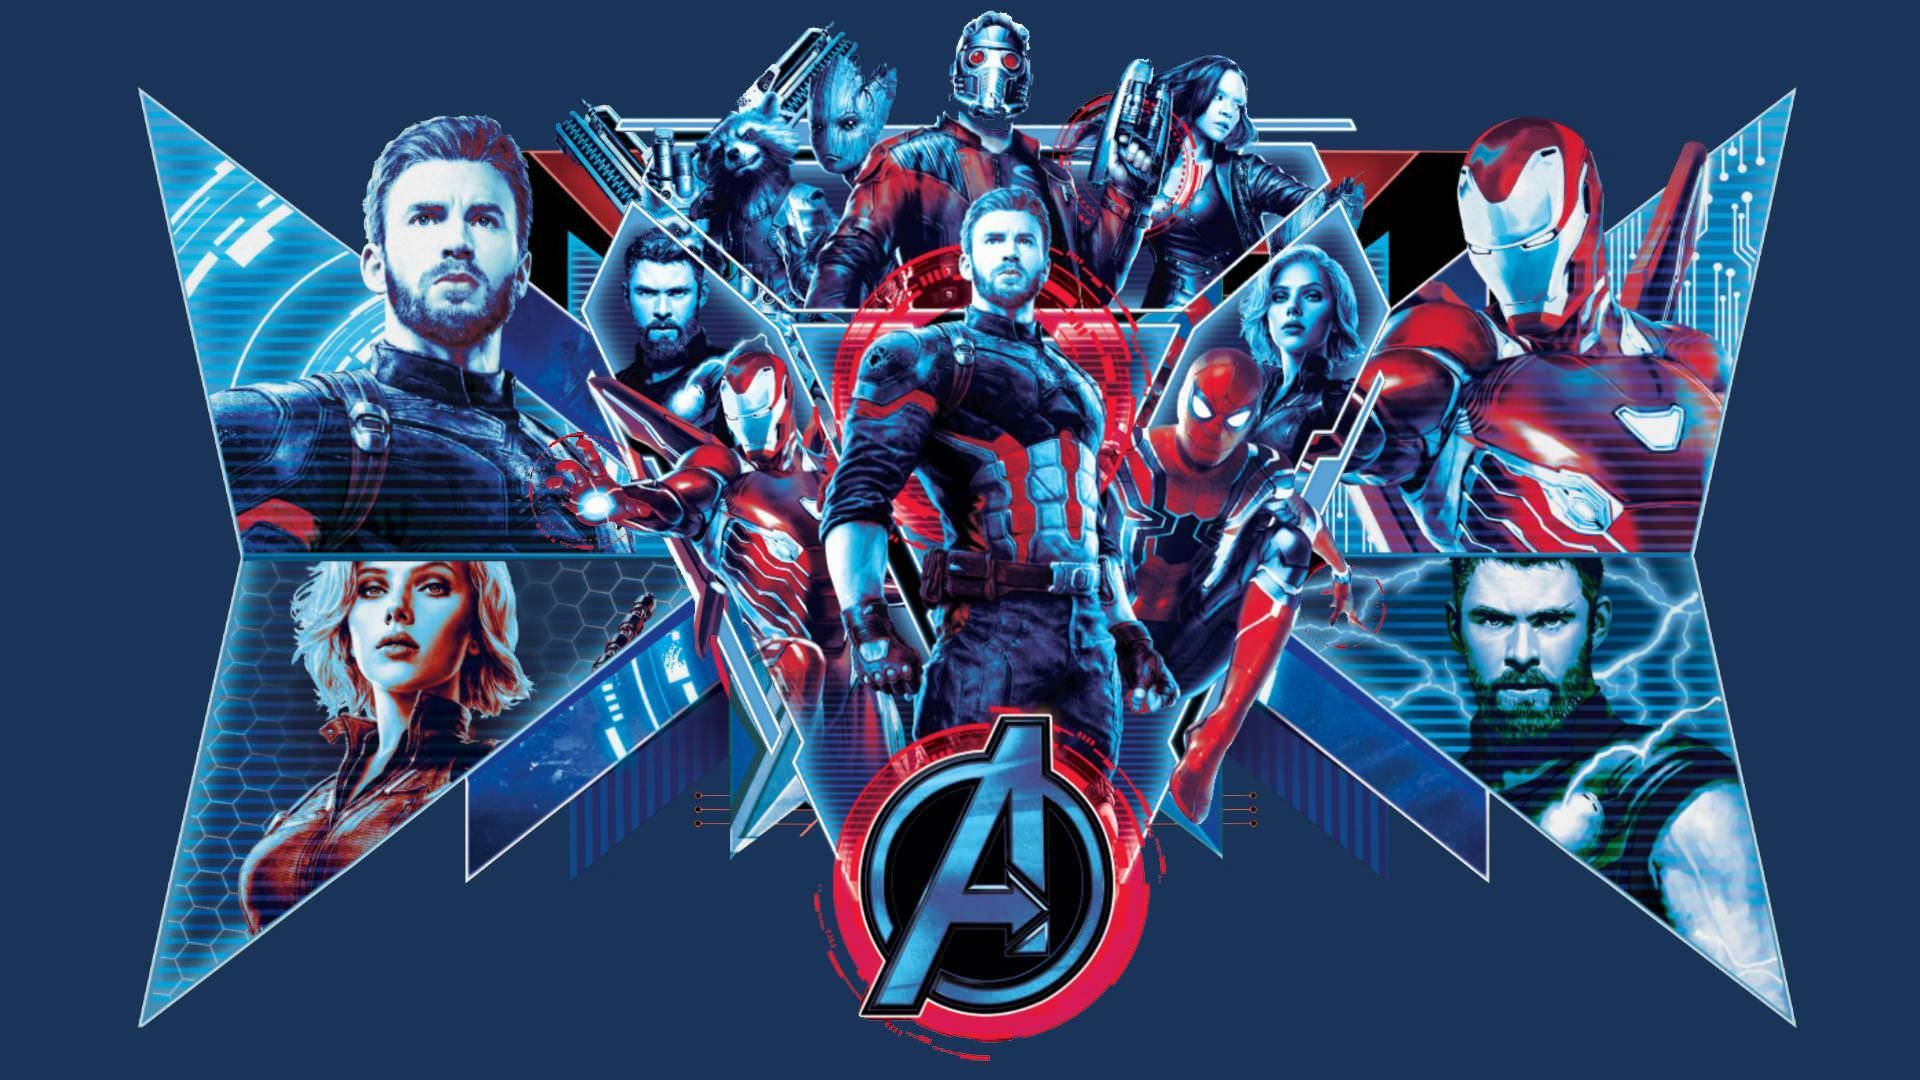 Free Marvel Avengers Wallpaper Downloads, [300+] Marvel Avengers Wallpapers  for FREE 